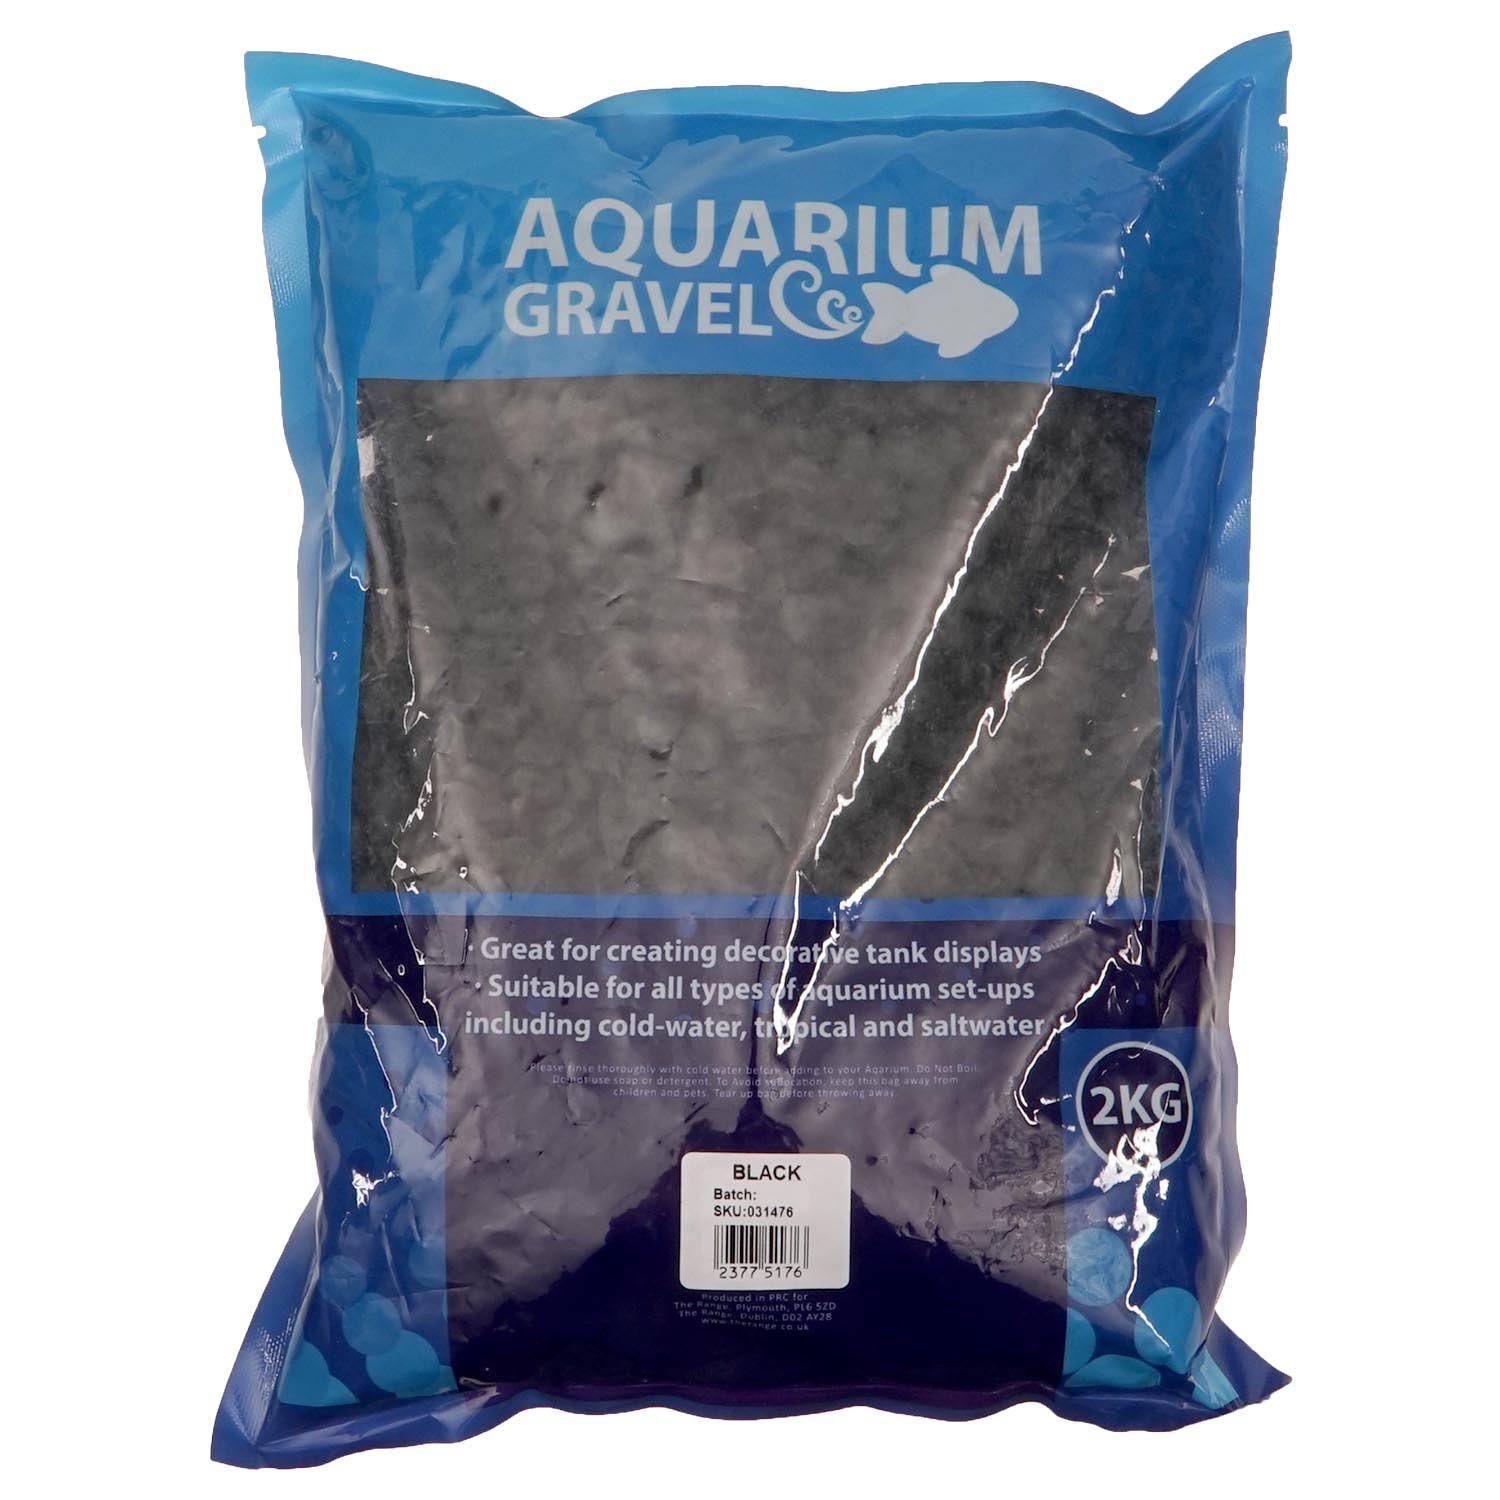 Black Aquarium Gravel 2kg Image